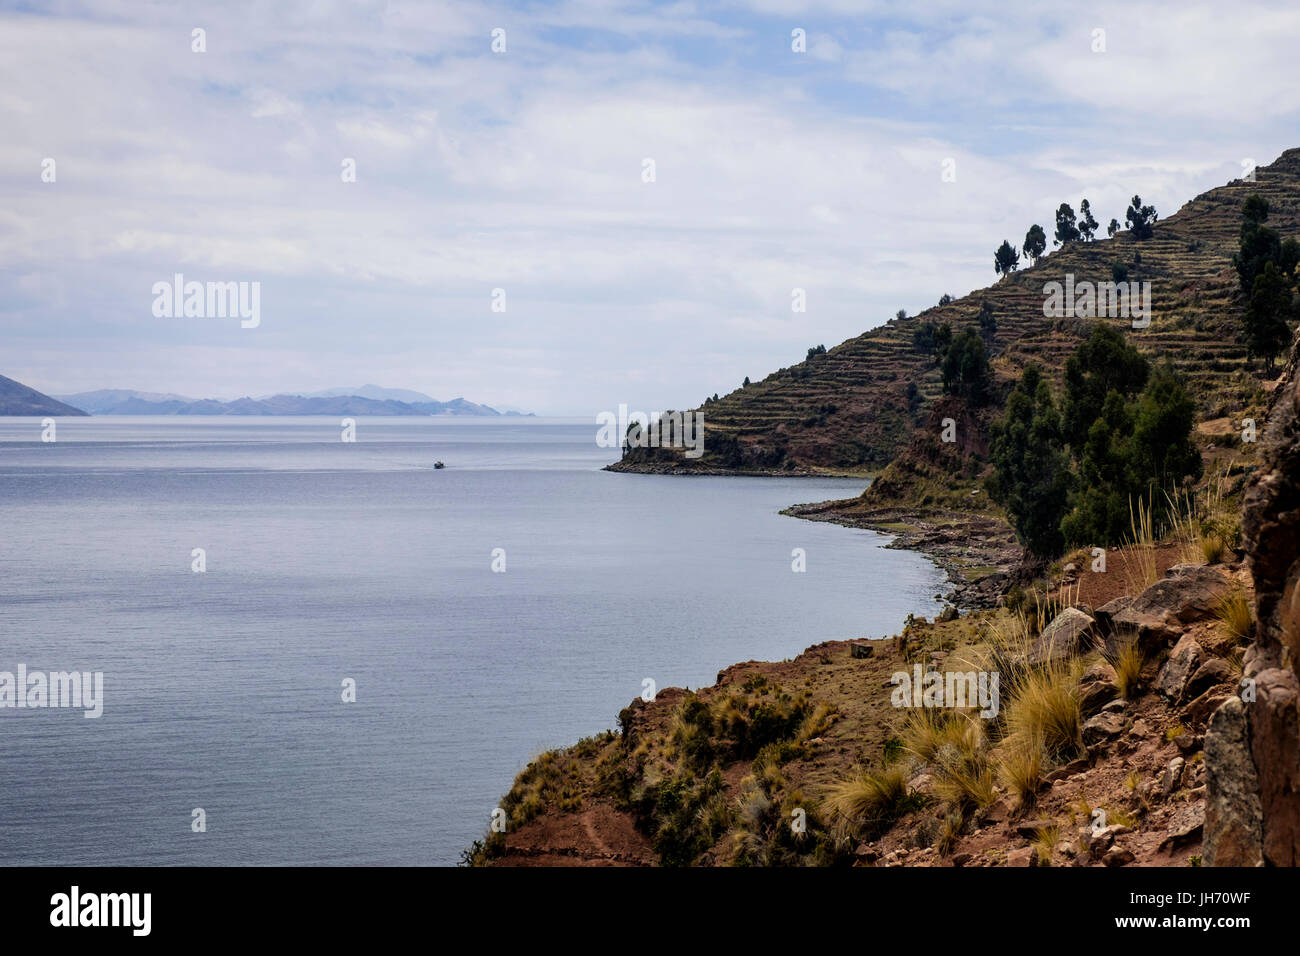 TAQUILE, Perù - circa ottobre 2015: isola di Taquile nel Lago Titicaca. Foto Stock